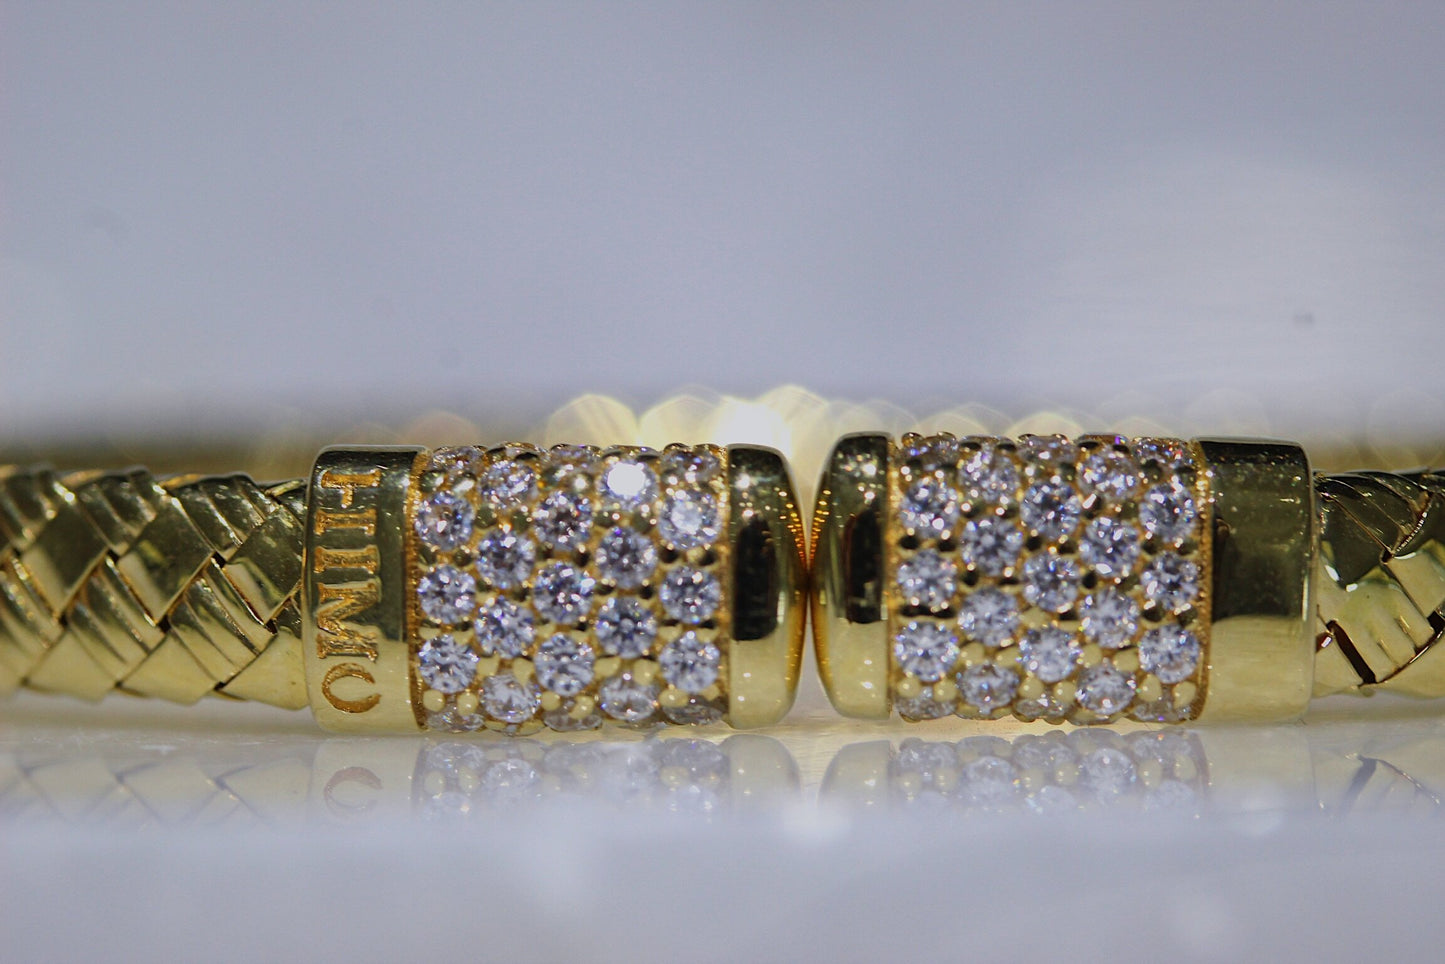 18k Gold Himo Bangle Bracelets